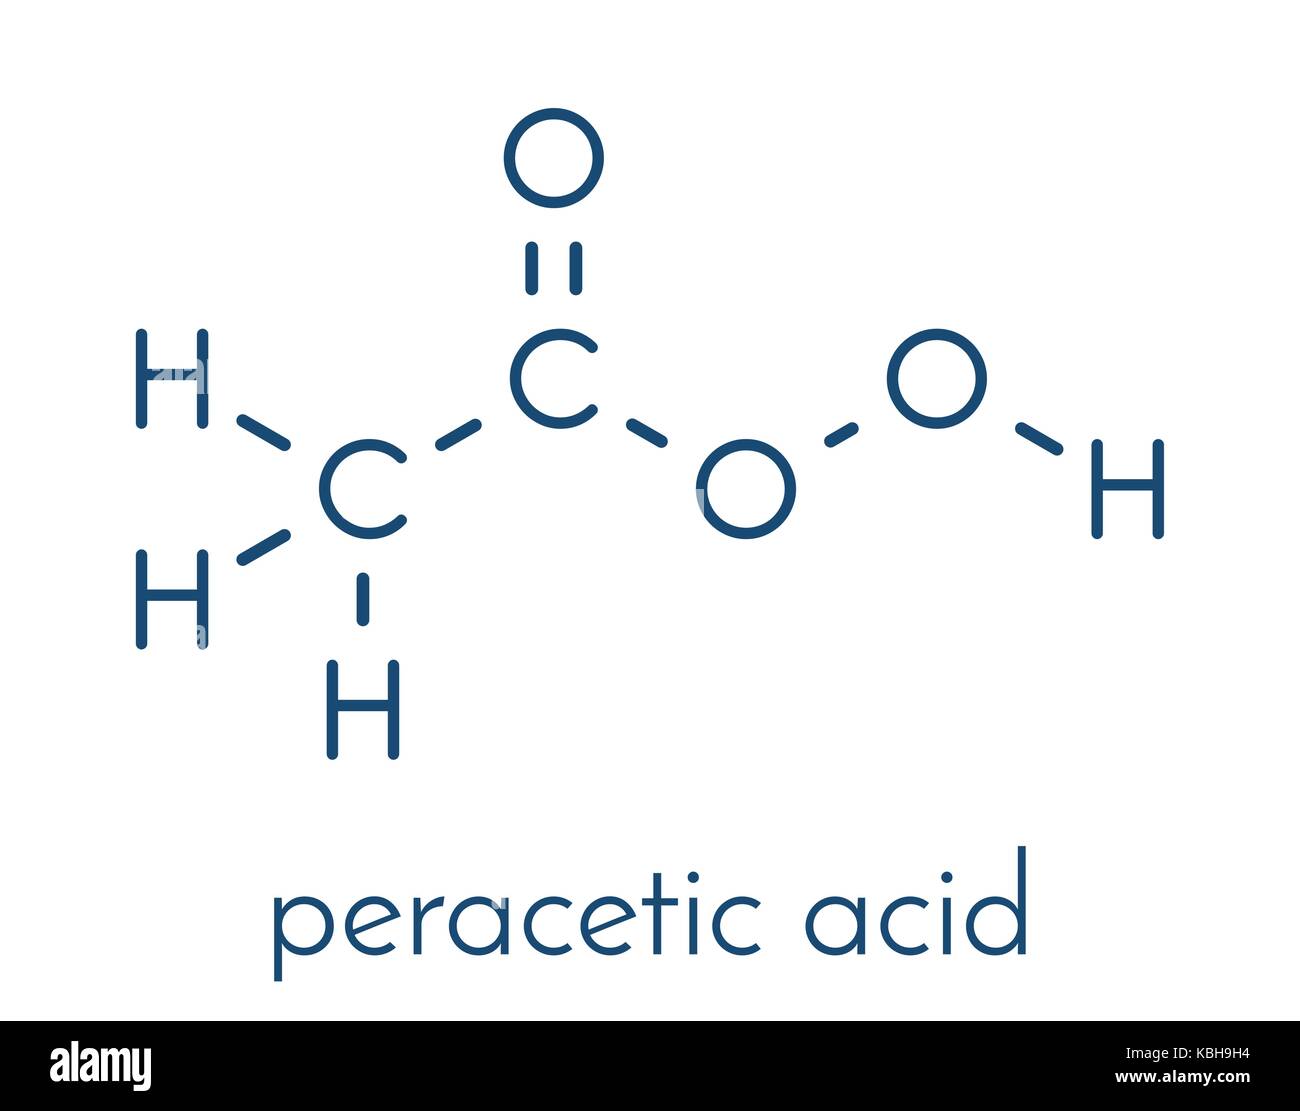 https://c8.alamy.com/compes/kbh9h4/acido-peracetico-acido-peroxiacetico-paa-molecula-desinfectante-peroxido-organico-utilizado-comunmente-como-agentes-antimicrobianos-formula-esqueletica-kbh9h4.jpg